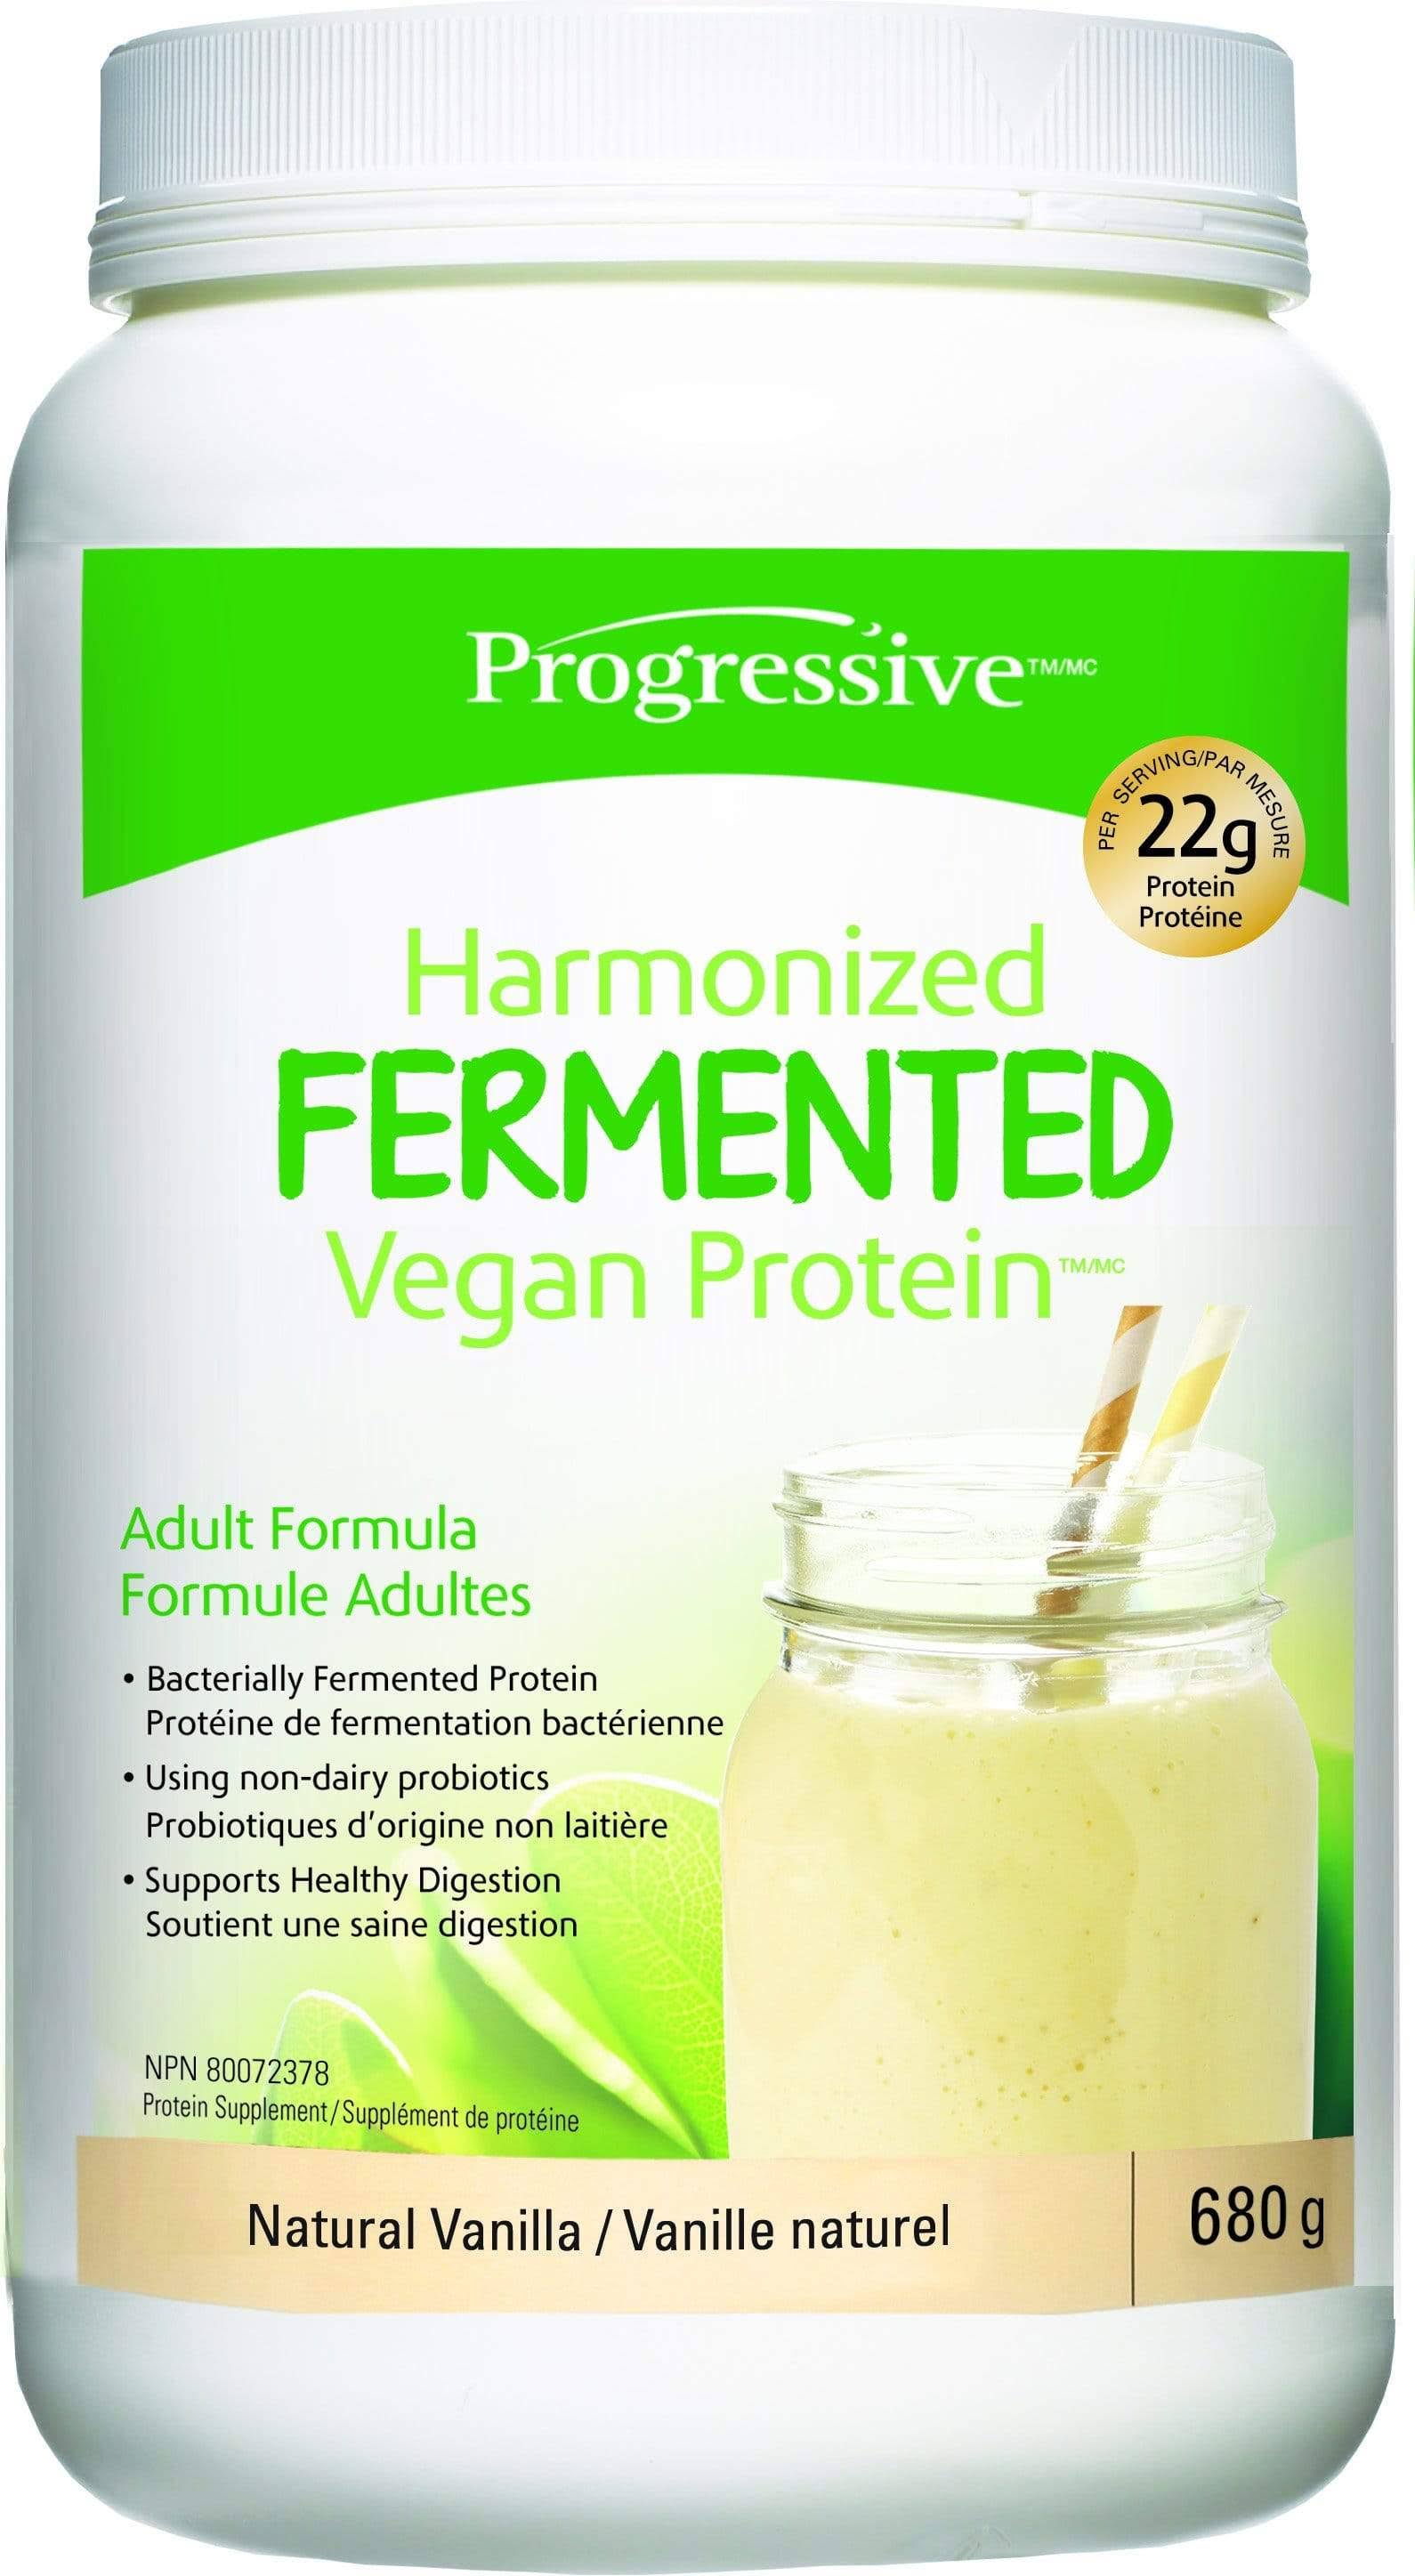 Progressive Harmonized Fermented Vegan Protein Natural Vanilla 680g